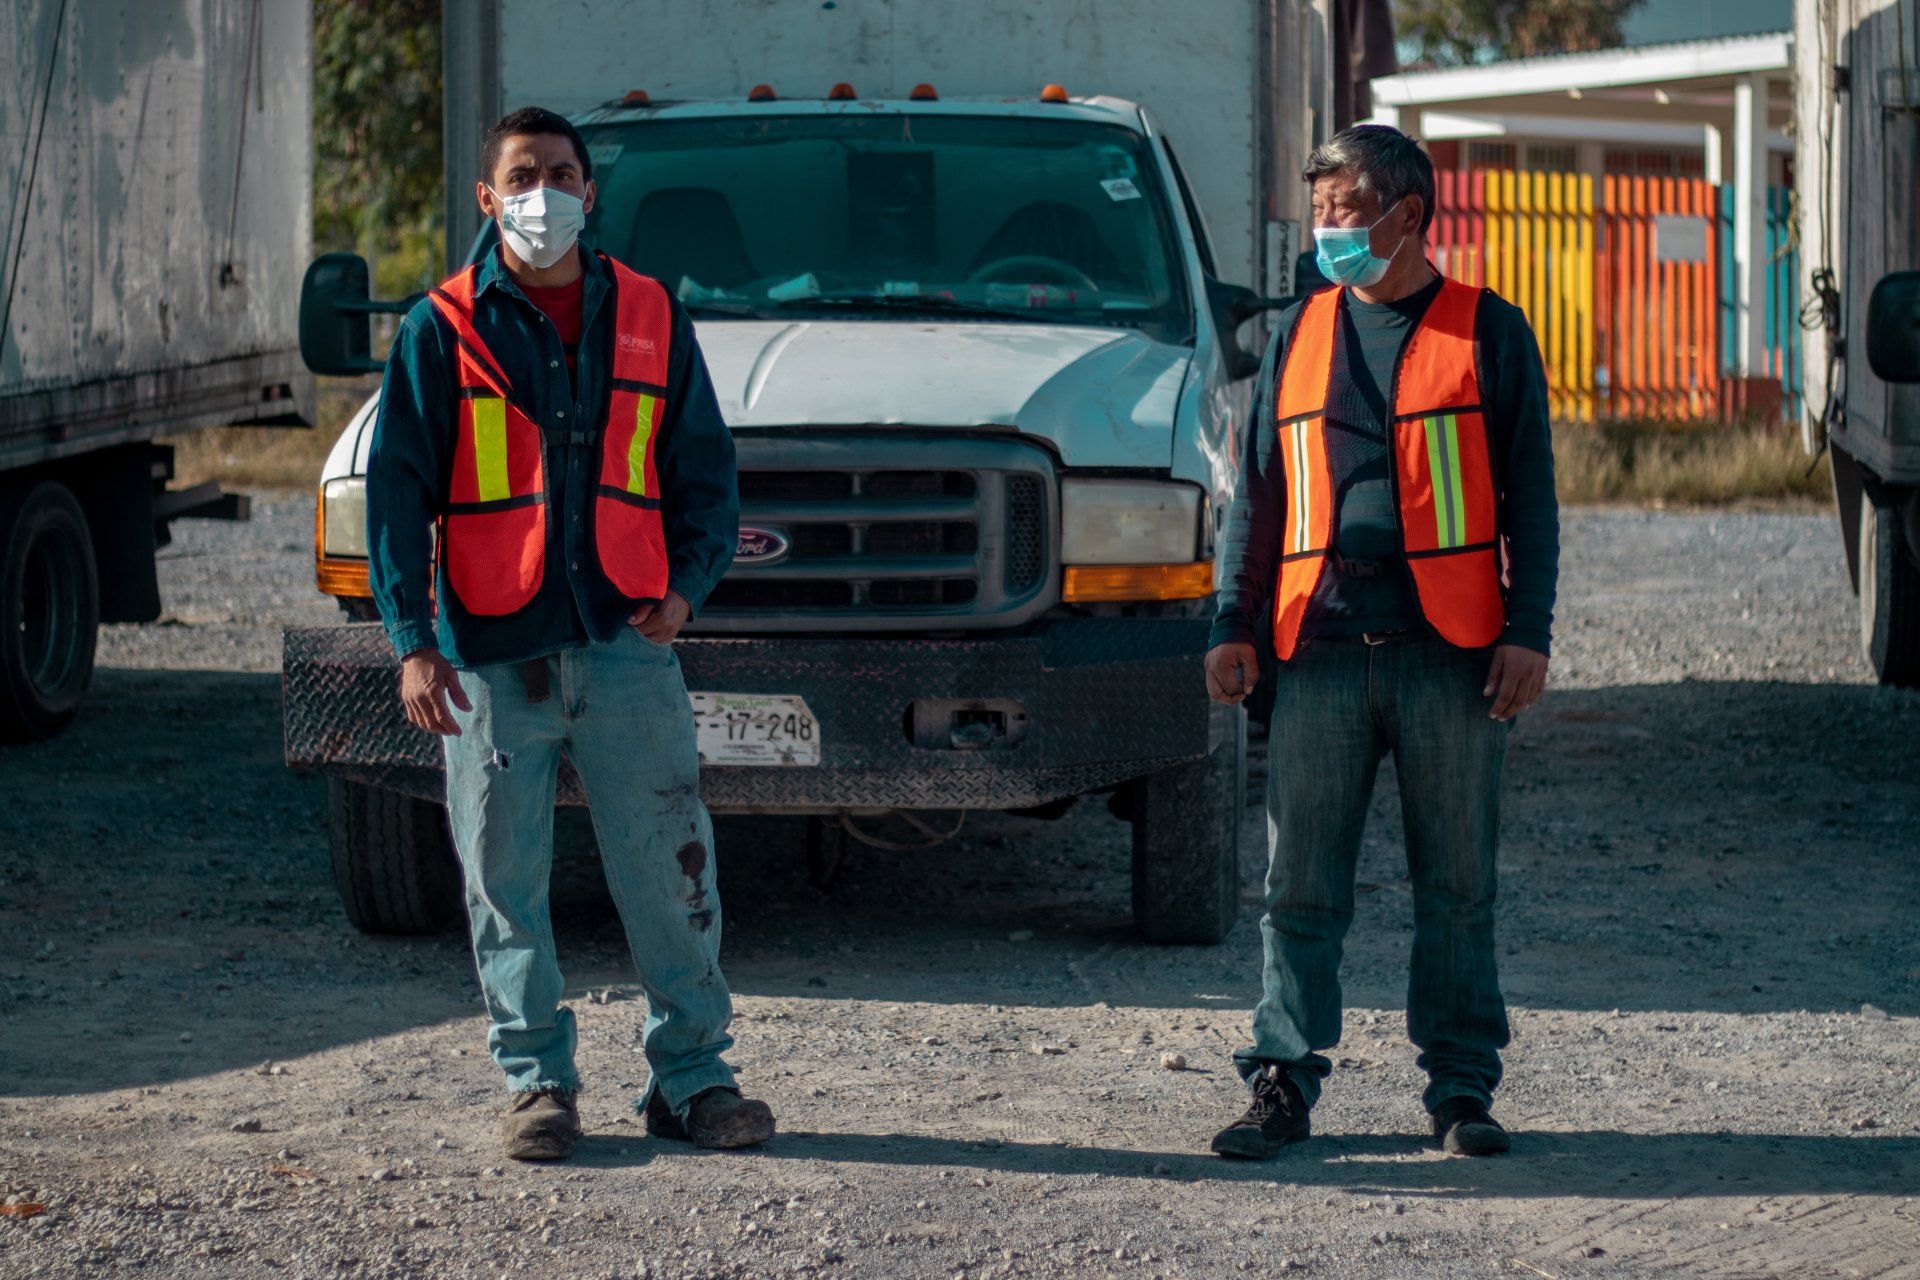 Trabajadores en la recolección de basura enfrente de camión